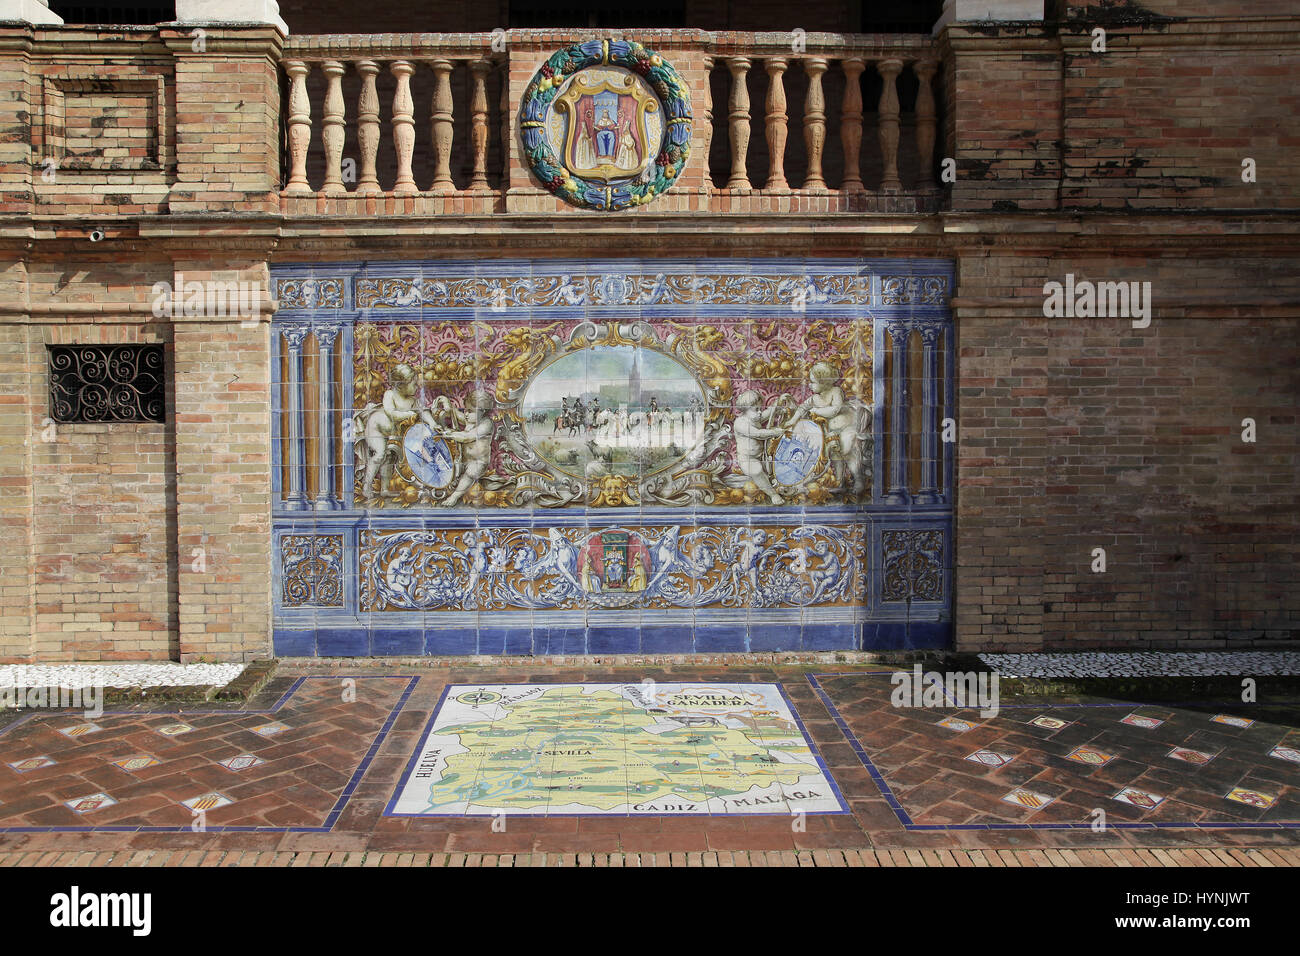 Keramische Azulejos gefliest provincial Bank oder Alkoven von Sevilla Ganadera auf der Plaza de España in Parque de Maria Luisa Sevilla Sevilla Spanien Stockfoto